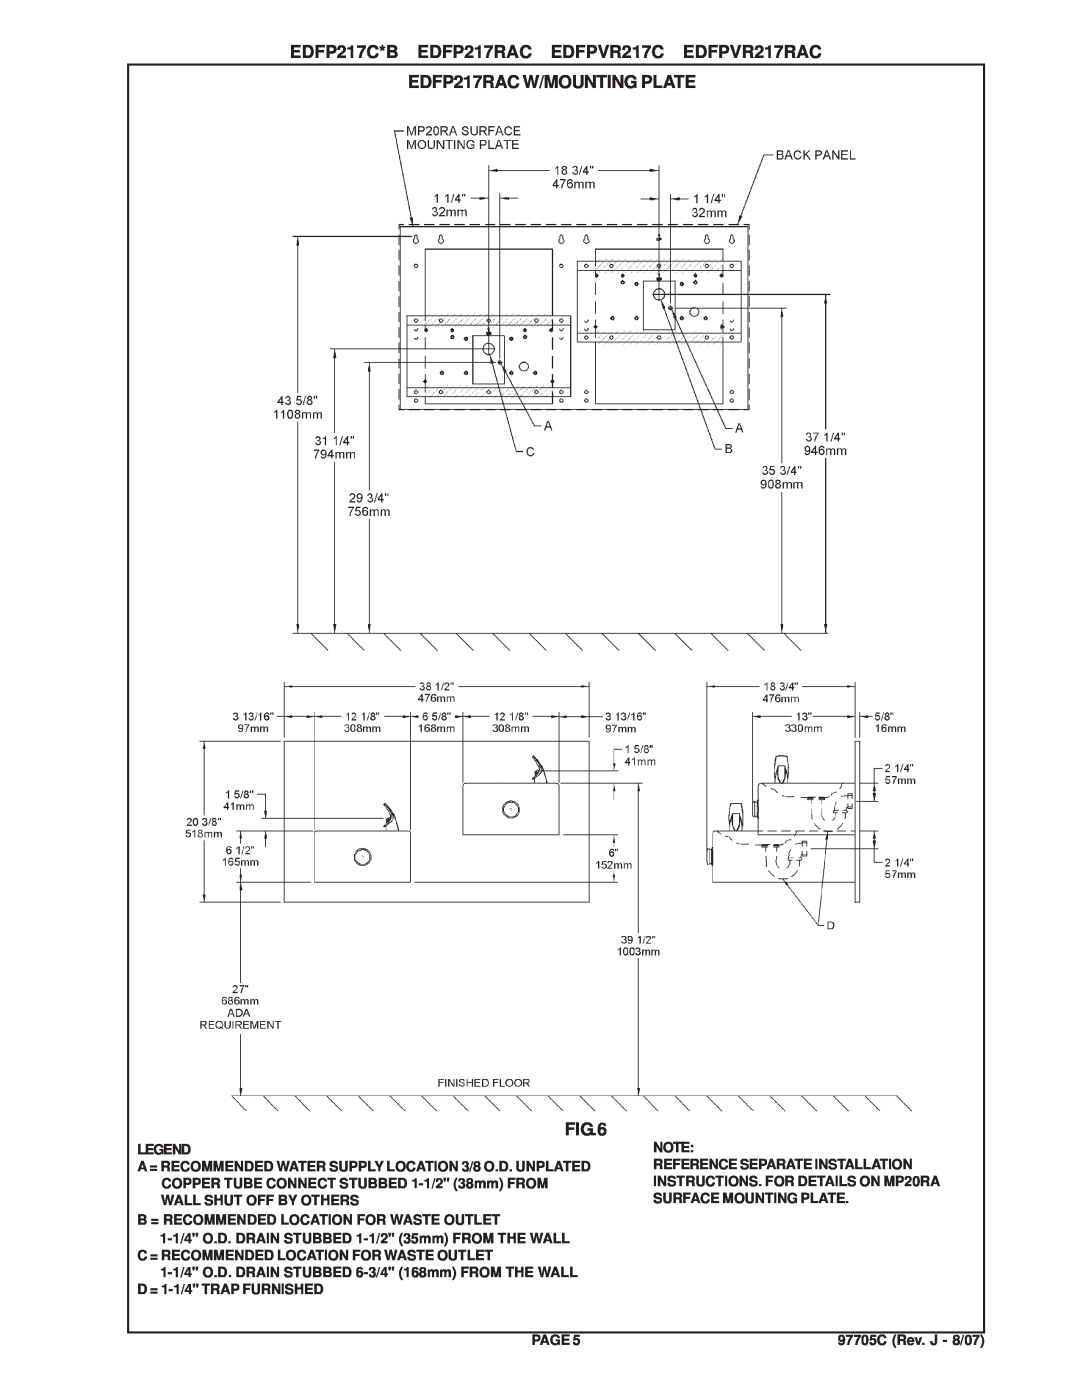 Elkay manual EDFP217RAC W/MOUNTING PLATE, EDFP217C*B EDFP217RAC EDFPVR217C EDFPVR217RAC 